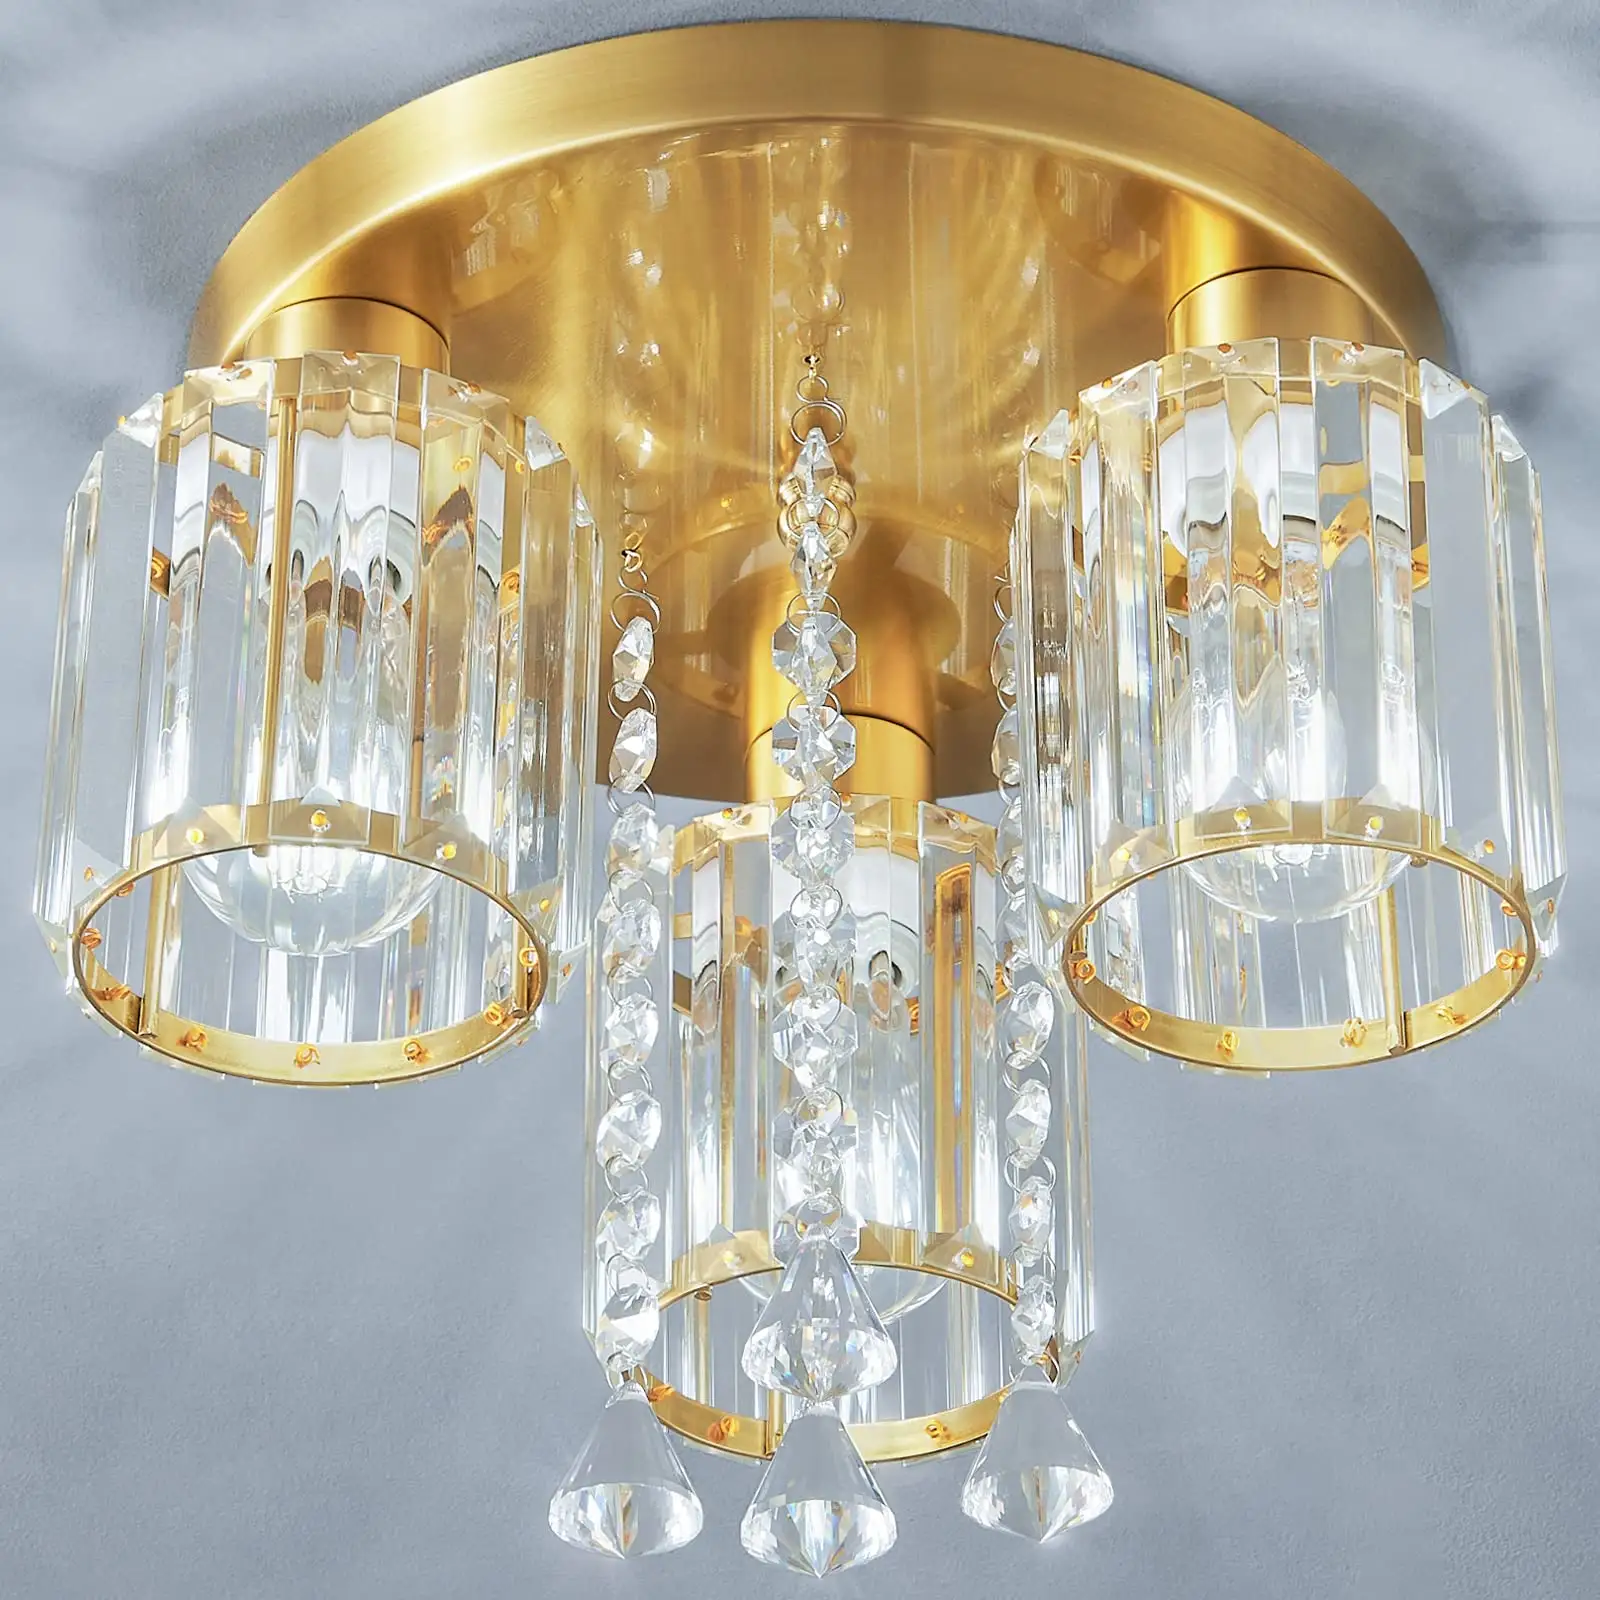 Vendita calda moderna lampadari nordici personalizzati camera da letto di lusso K9 lampadario di cristallo plafoniera